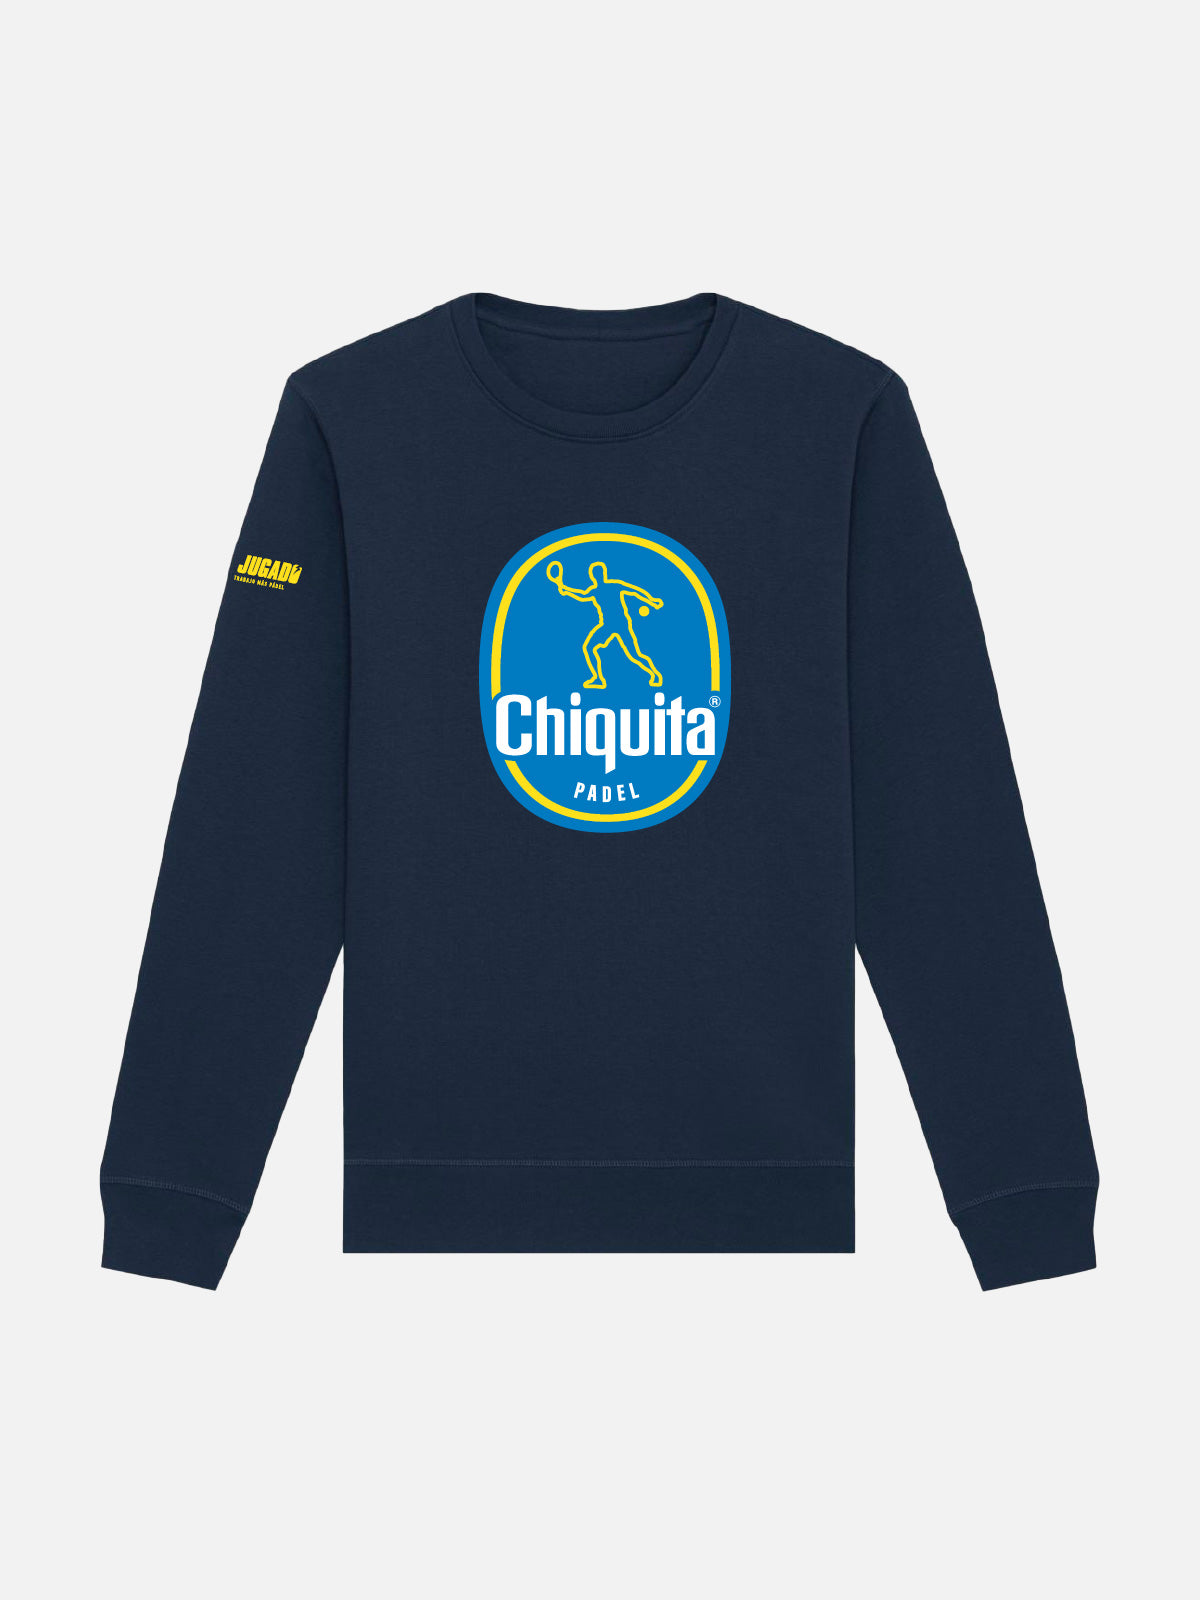 Fun Unisex Sweatshirt - Chiquita